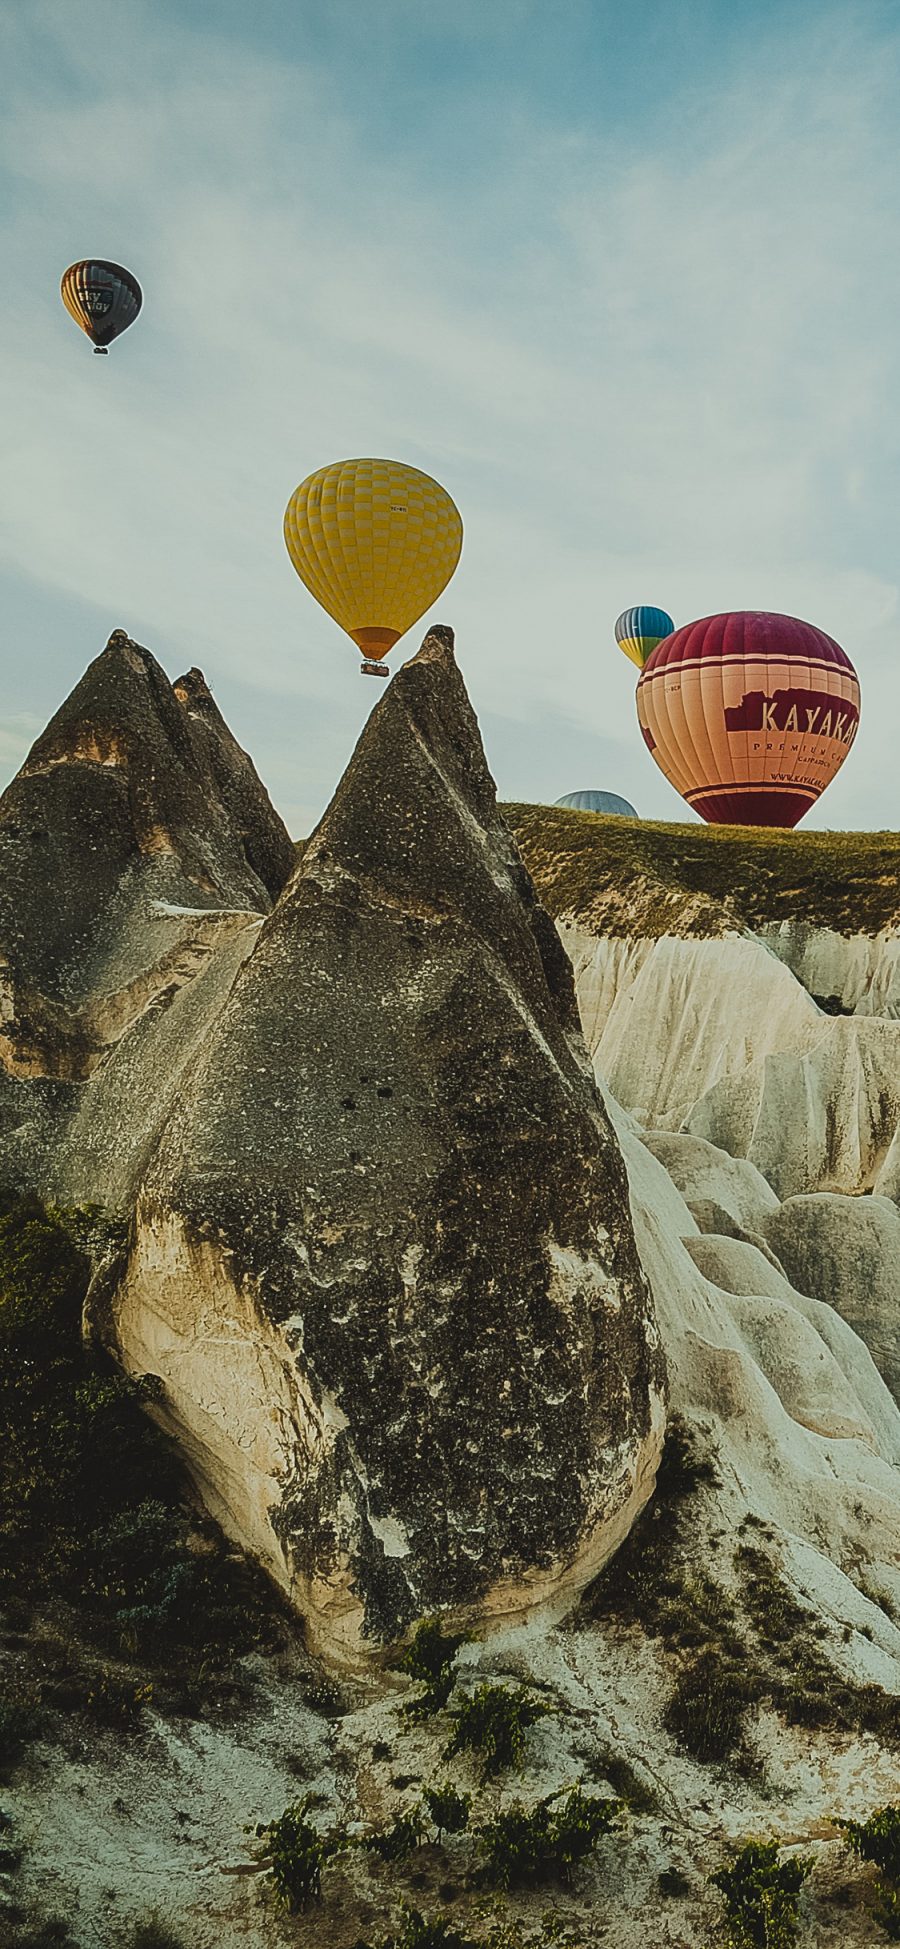 [2436×1125]异域 土耳其 热气球 景点 苹果手机壁纸图片